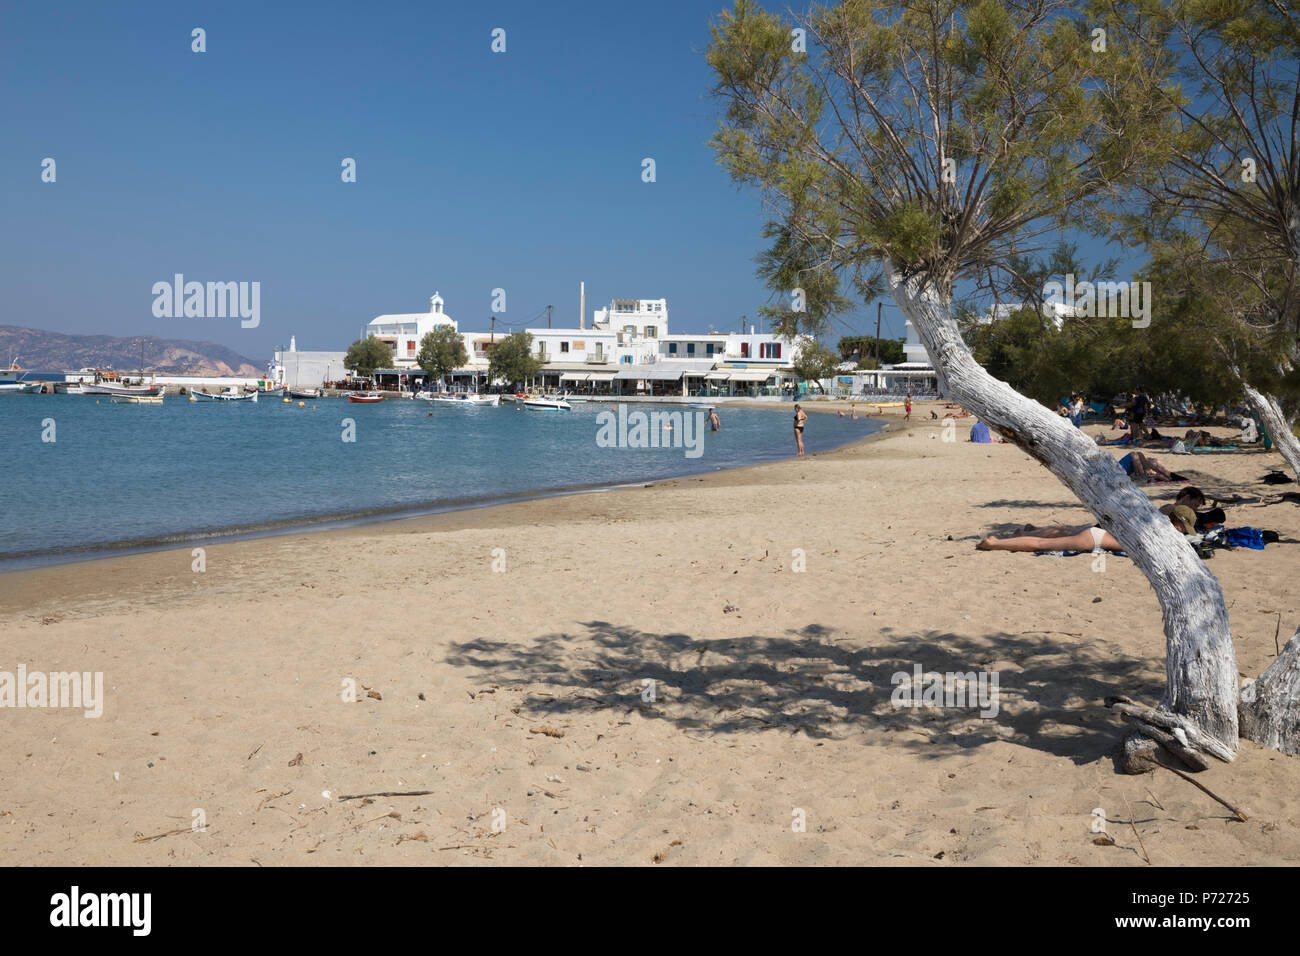 Vista a lo largo de la playa de arena blanca, Pollonia, Milos, Cyclades, islas griegas del Mar Egeo, Grecia, Europa Foto de stock